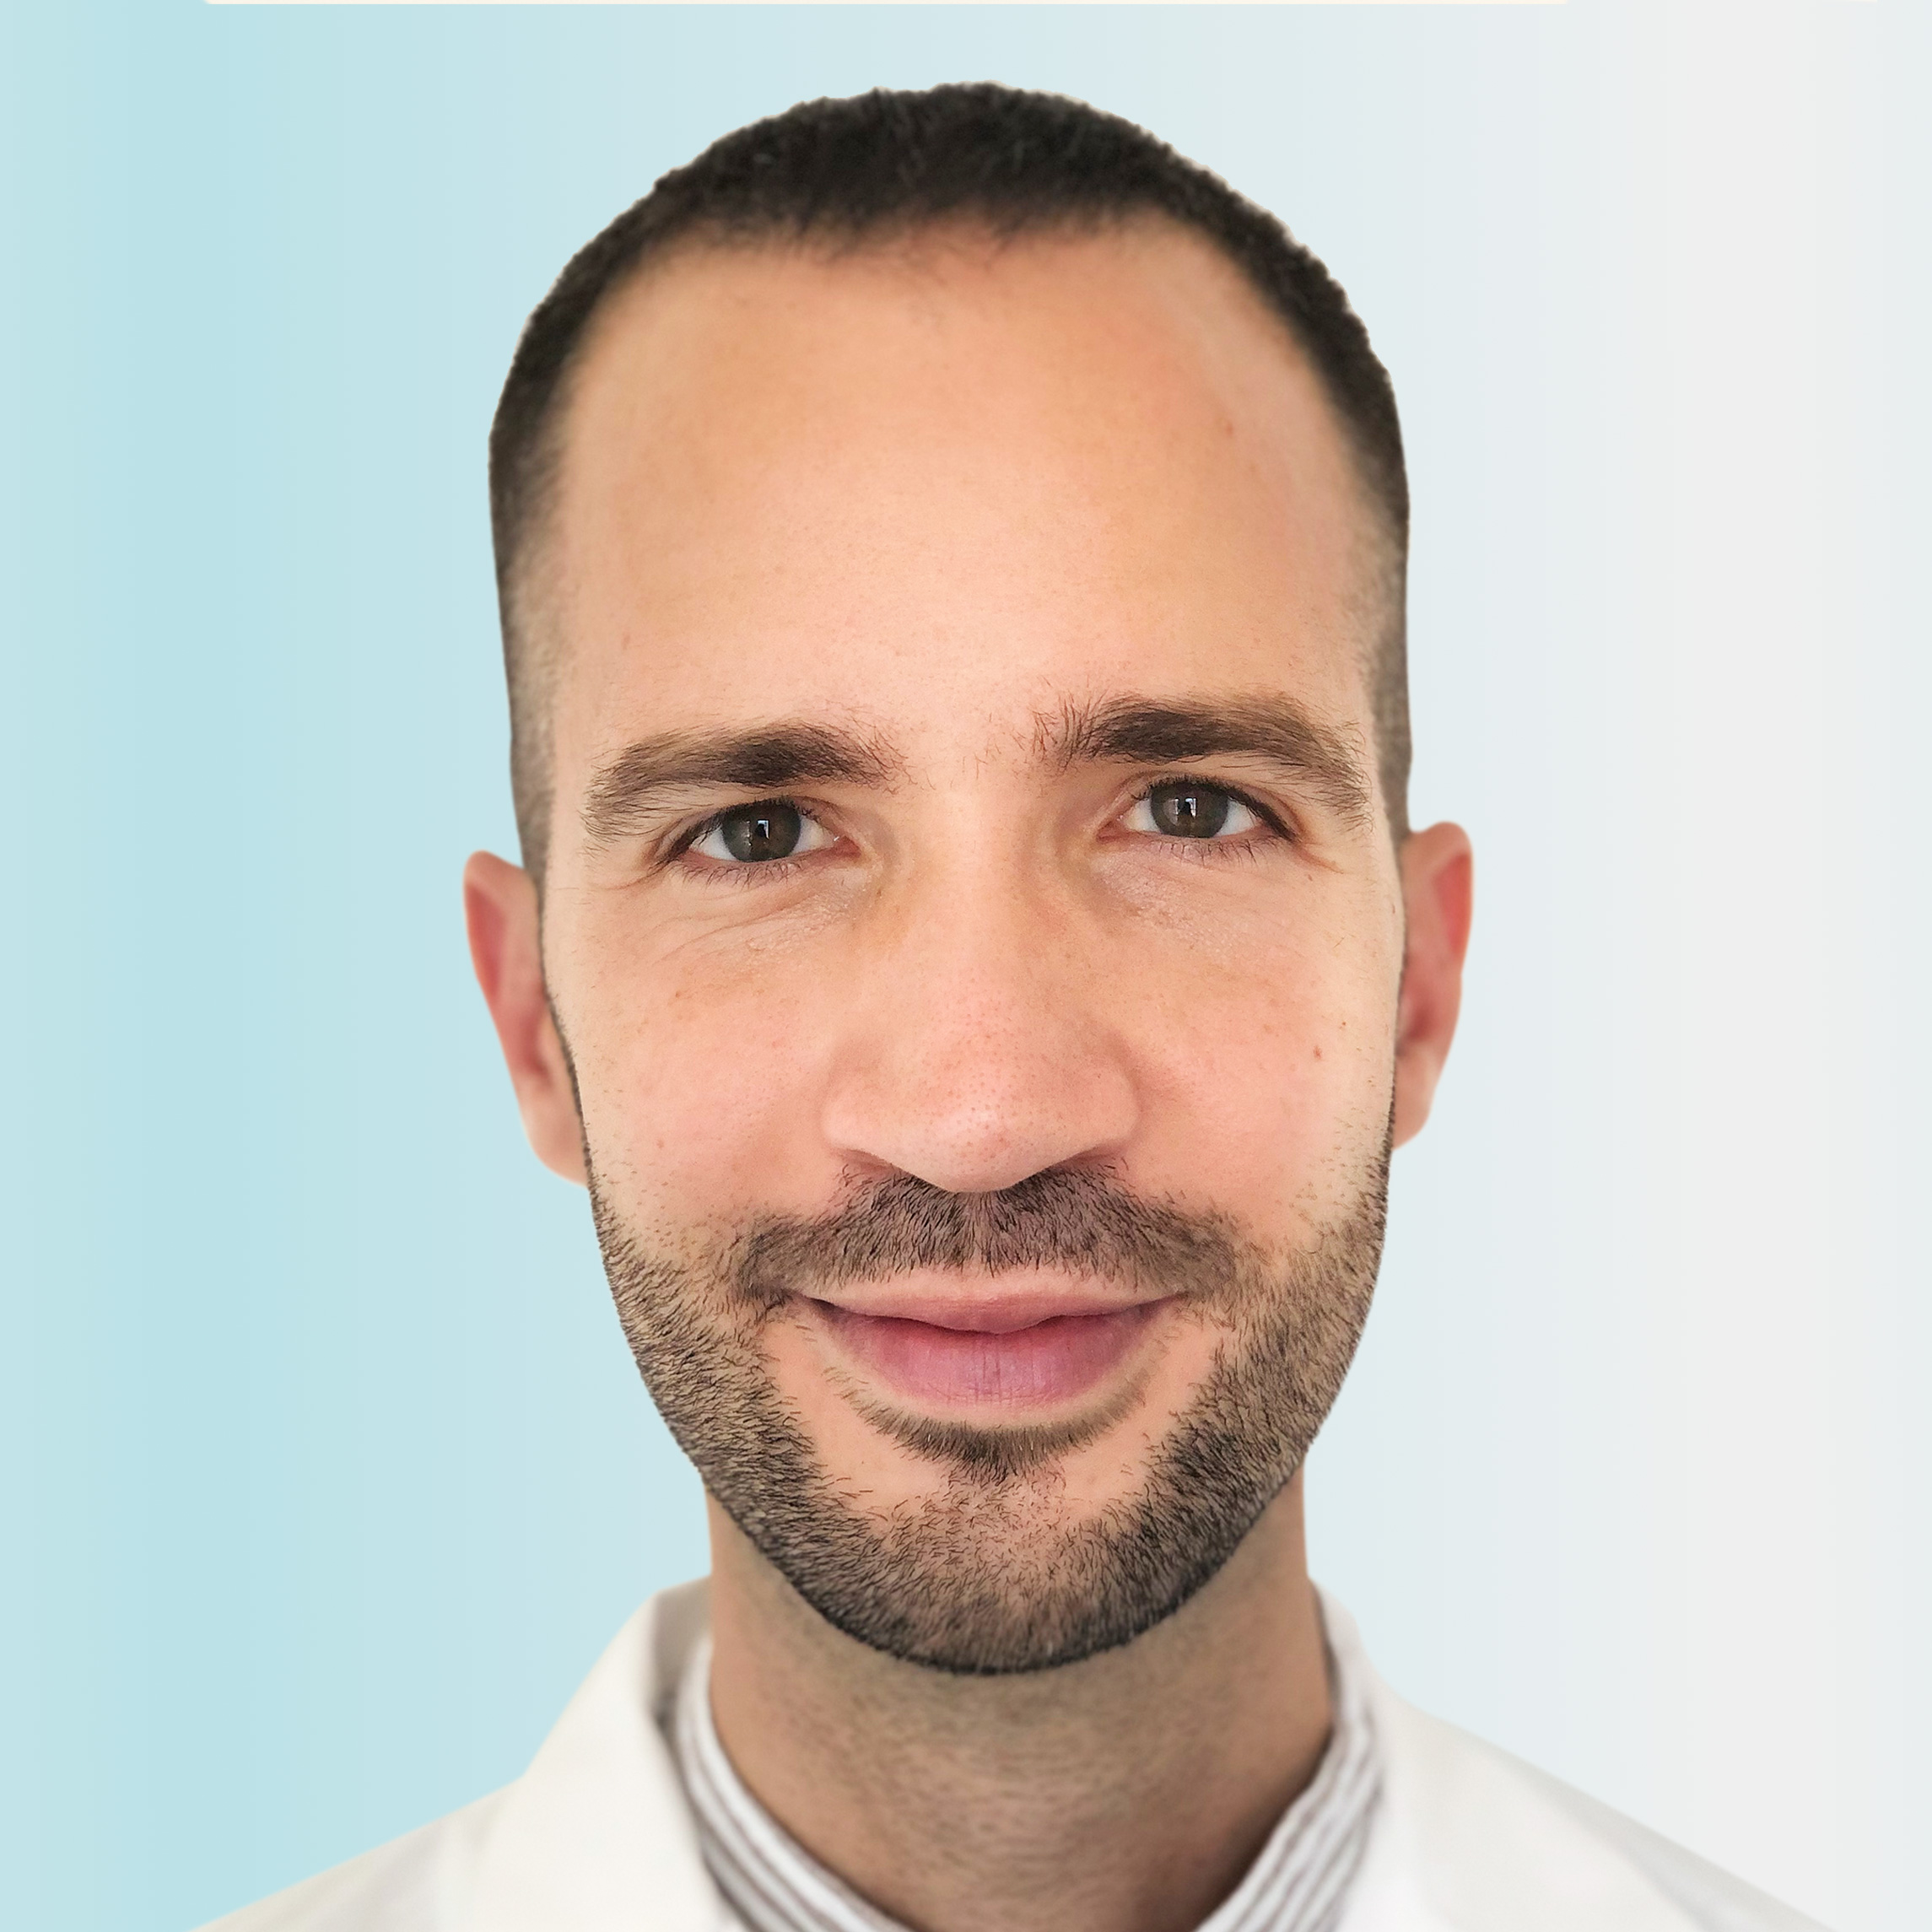 Dermatologue, Dr. Lorenzo Grizzetti